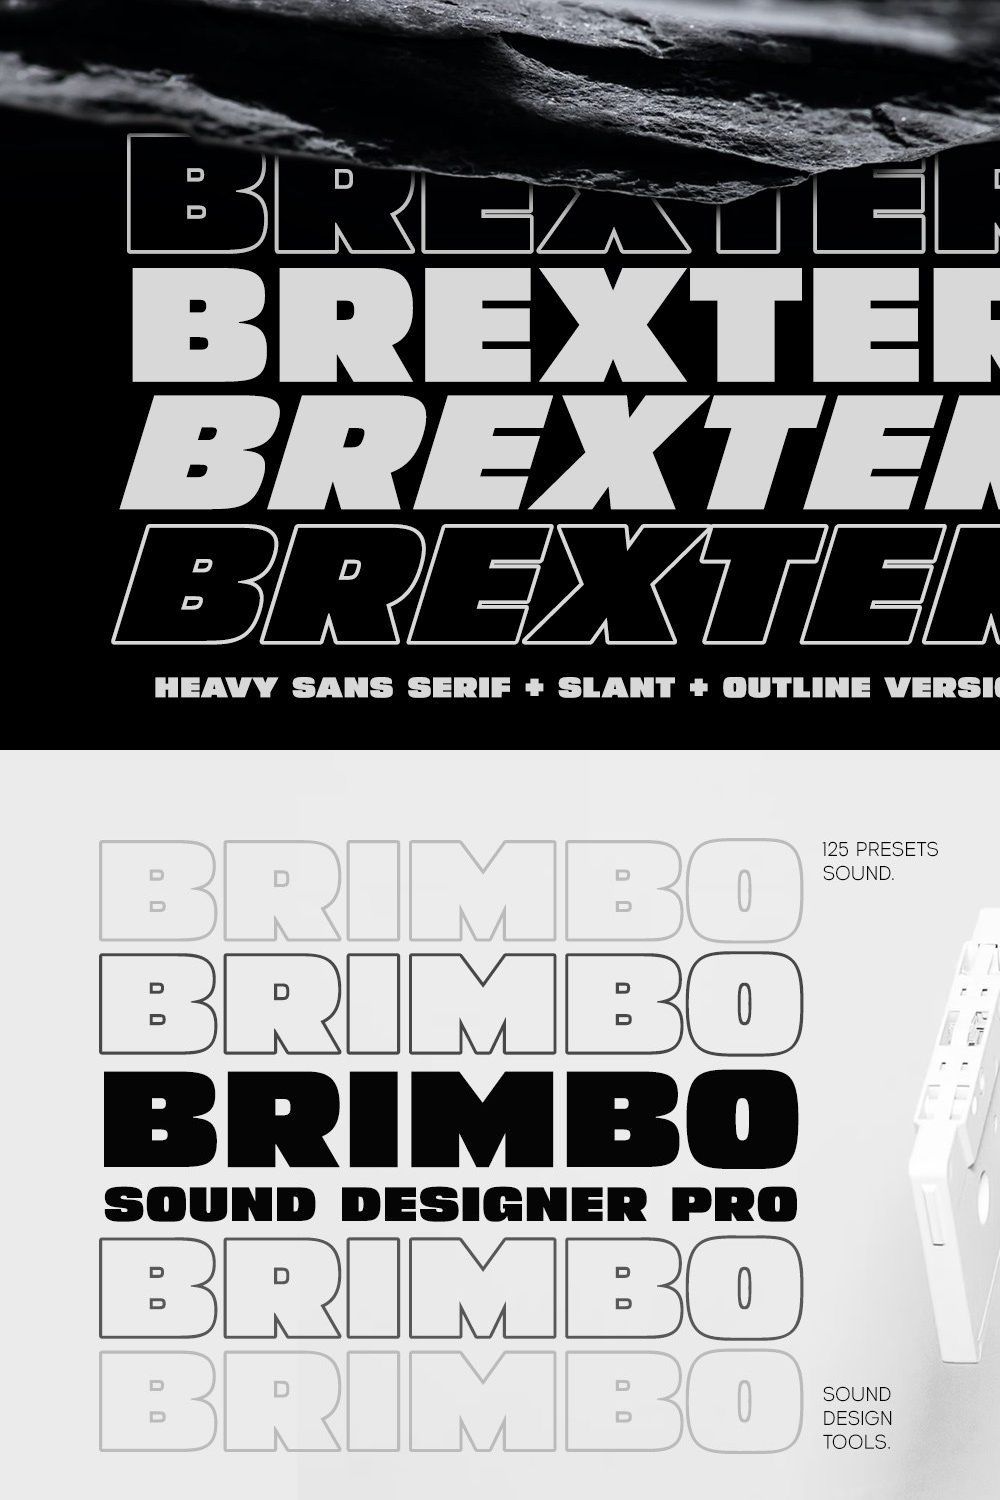 Brexter - Heavy Sans Serif pinterest preview image.